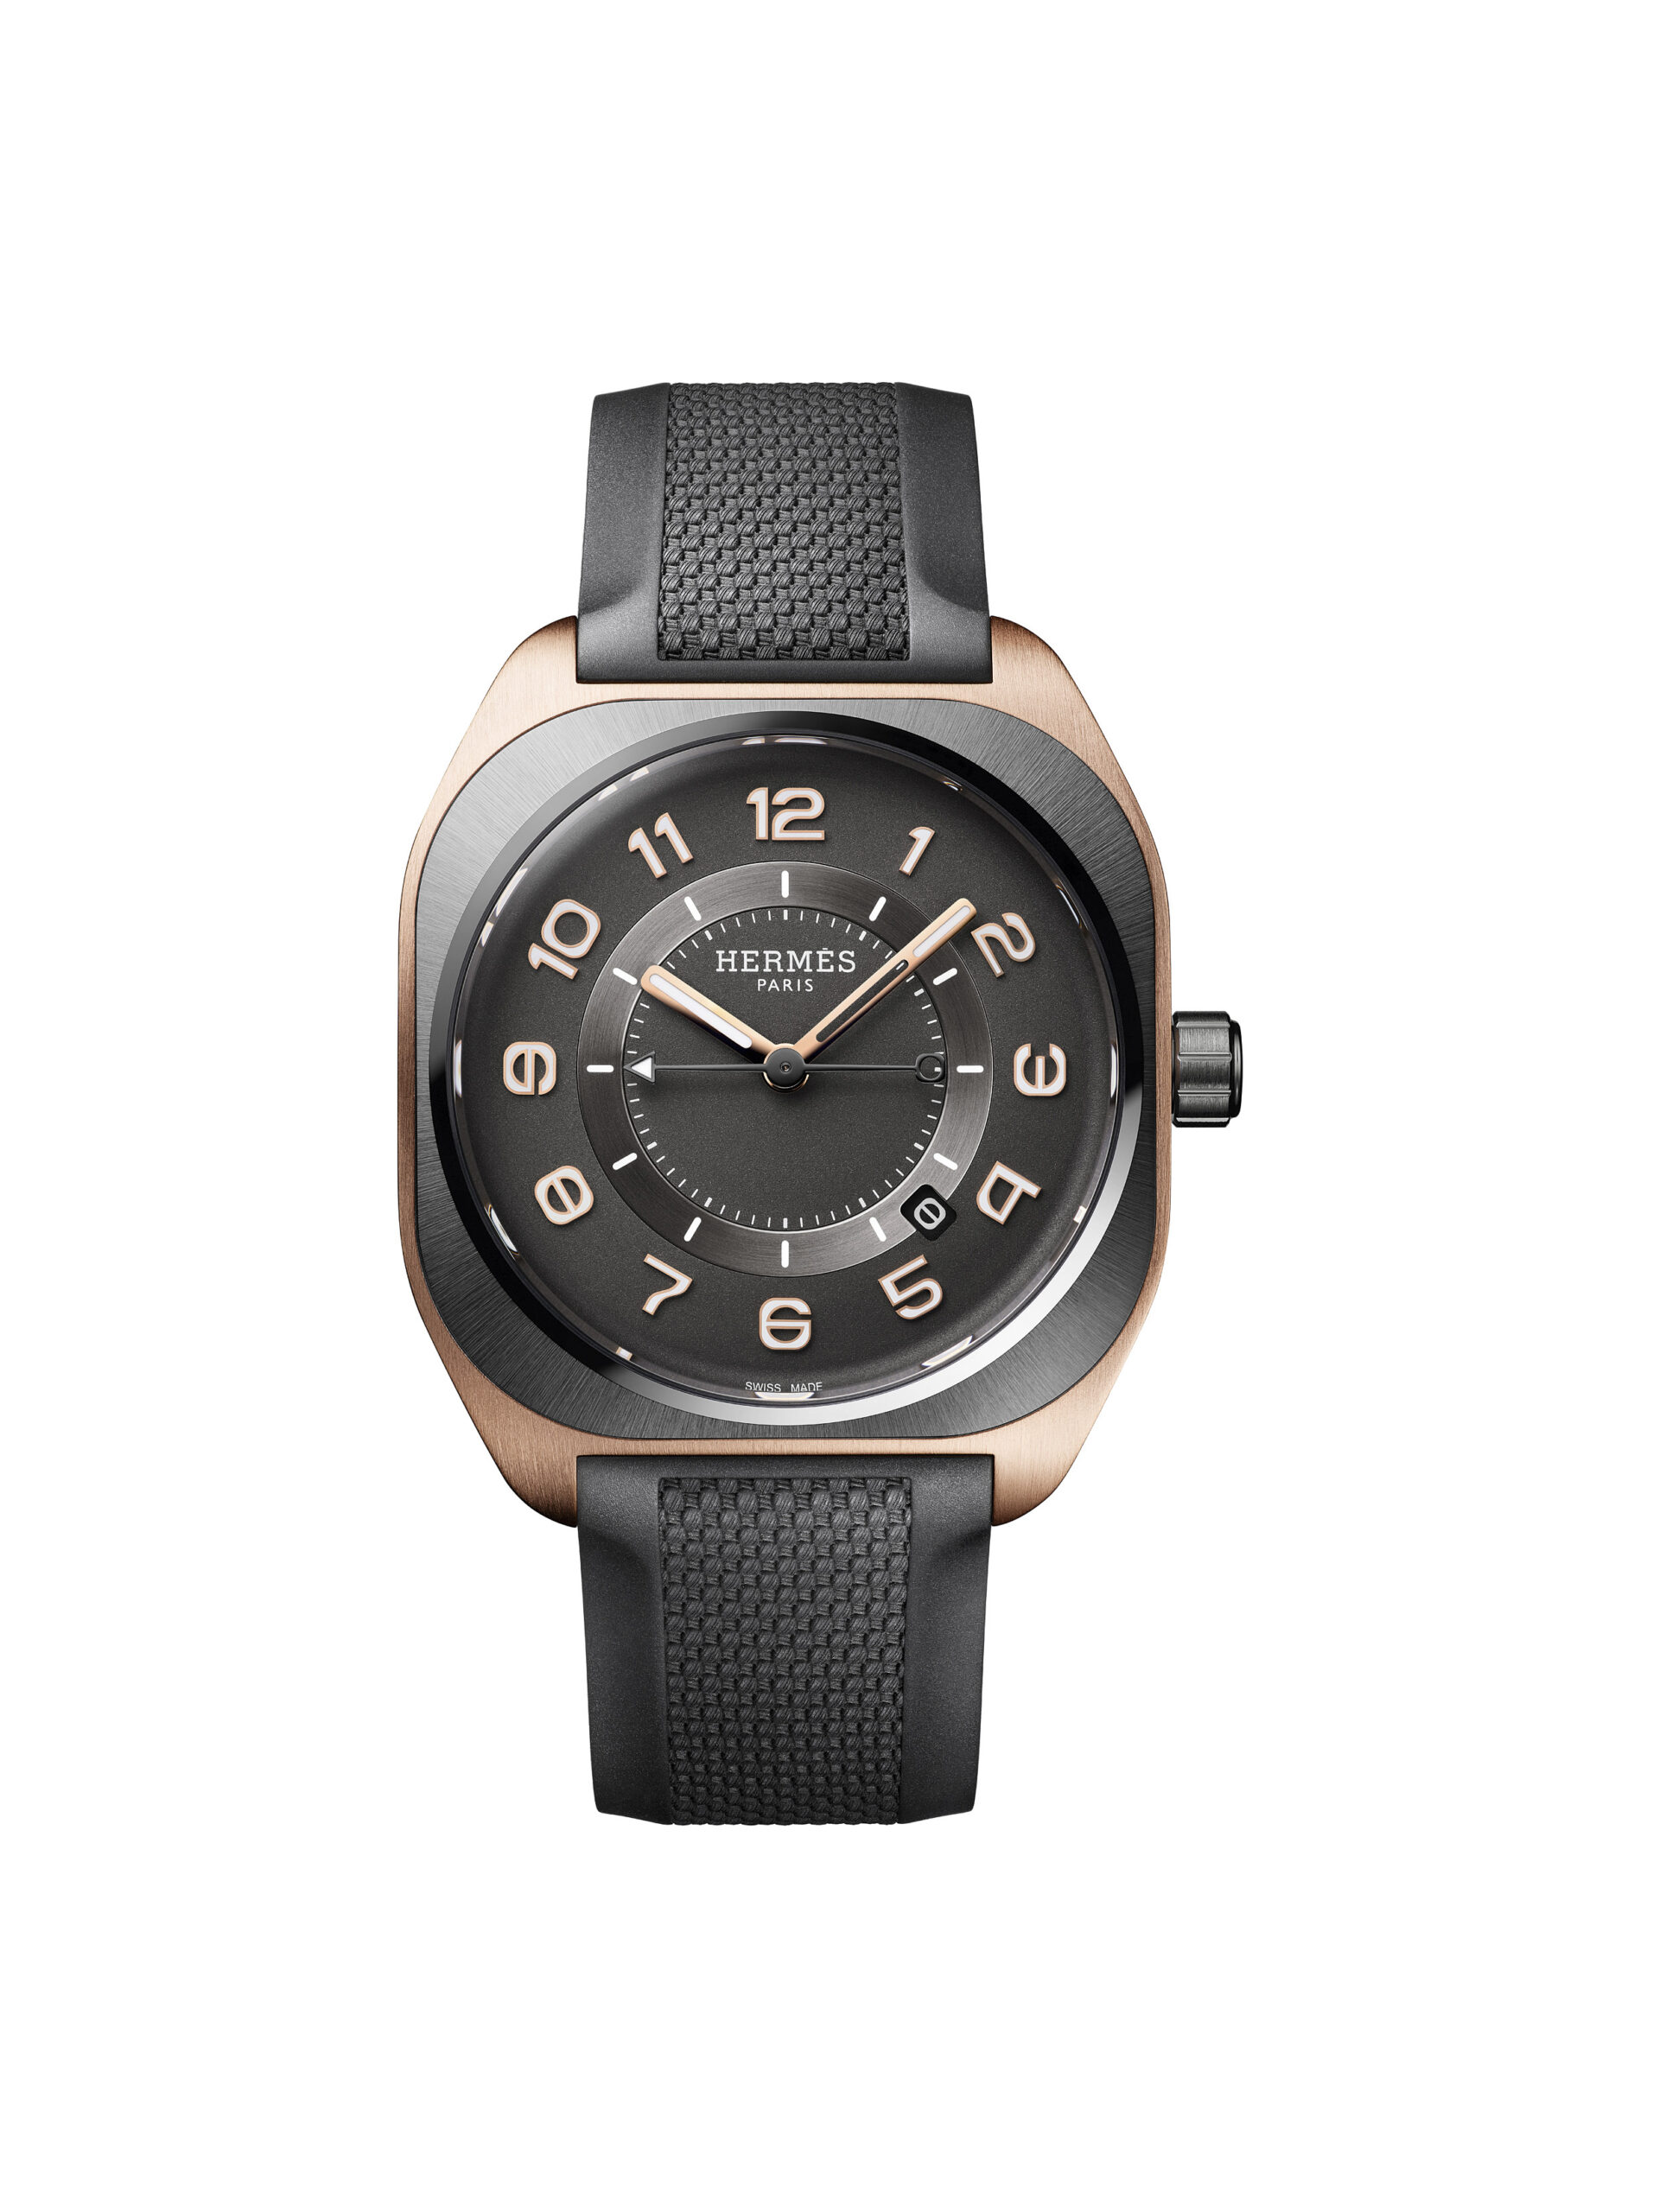 愛馬仕 HERMÈS H08 腕錶搭配鈦金屬及玫瑰金錶殼和橡膠錶帶